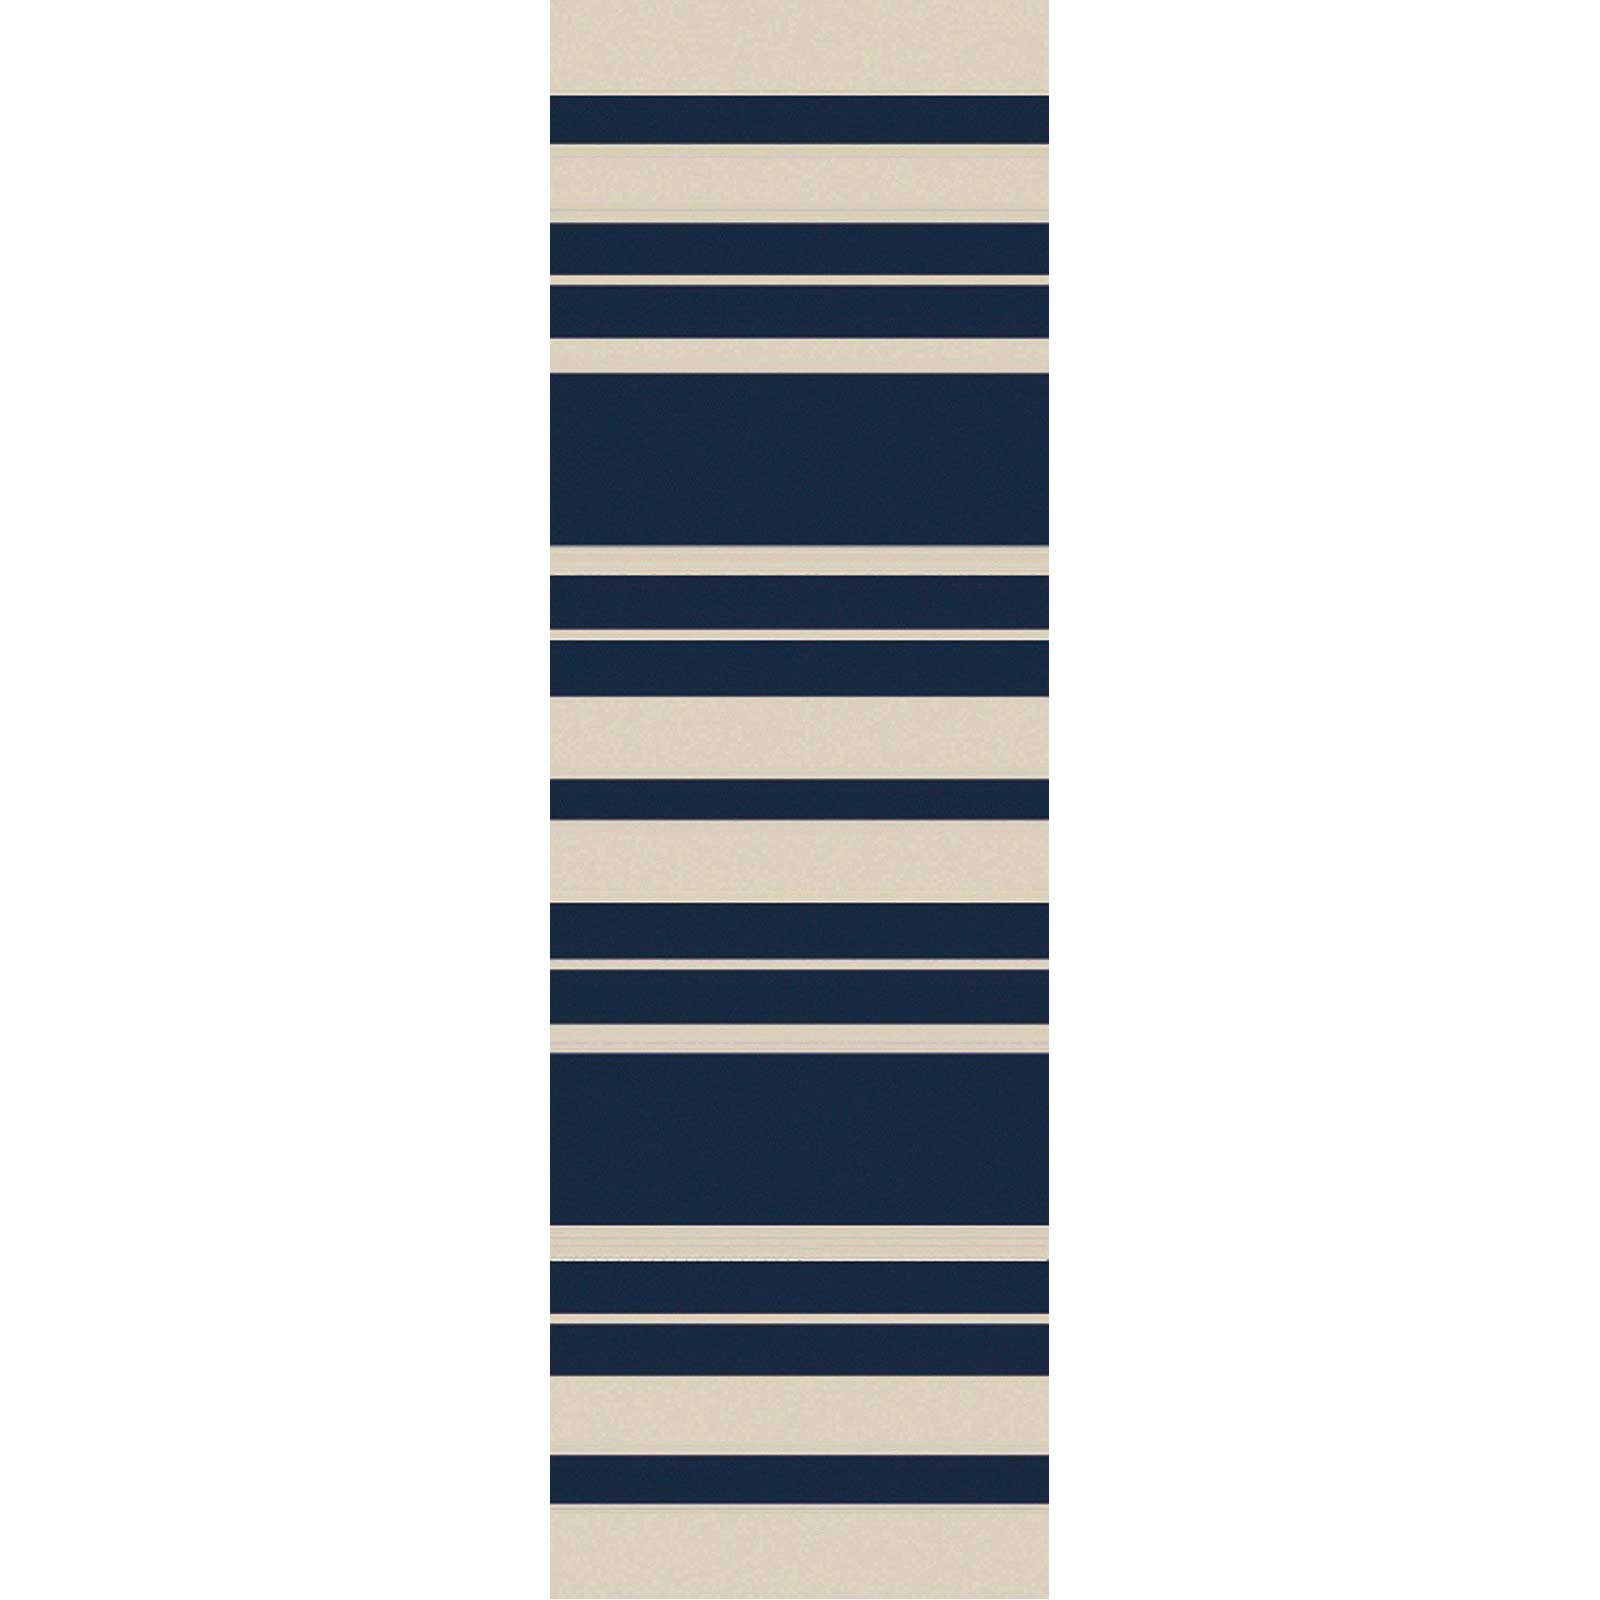 Picnic Striped Navy/Ivory Runner Rug